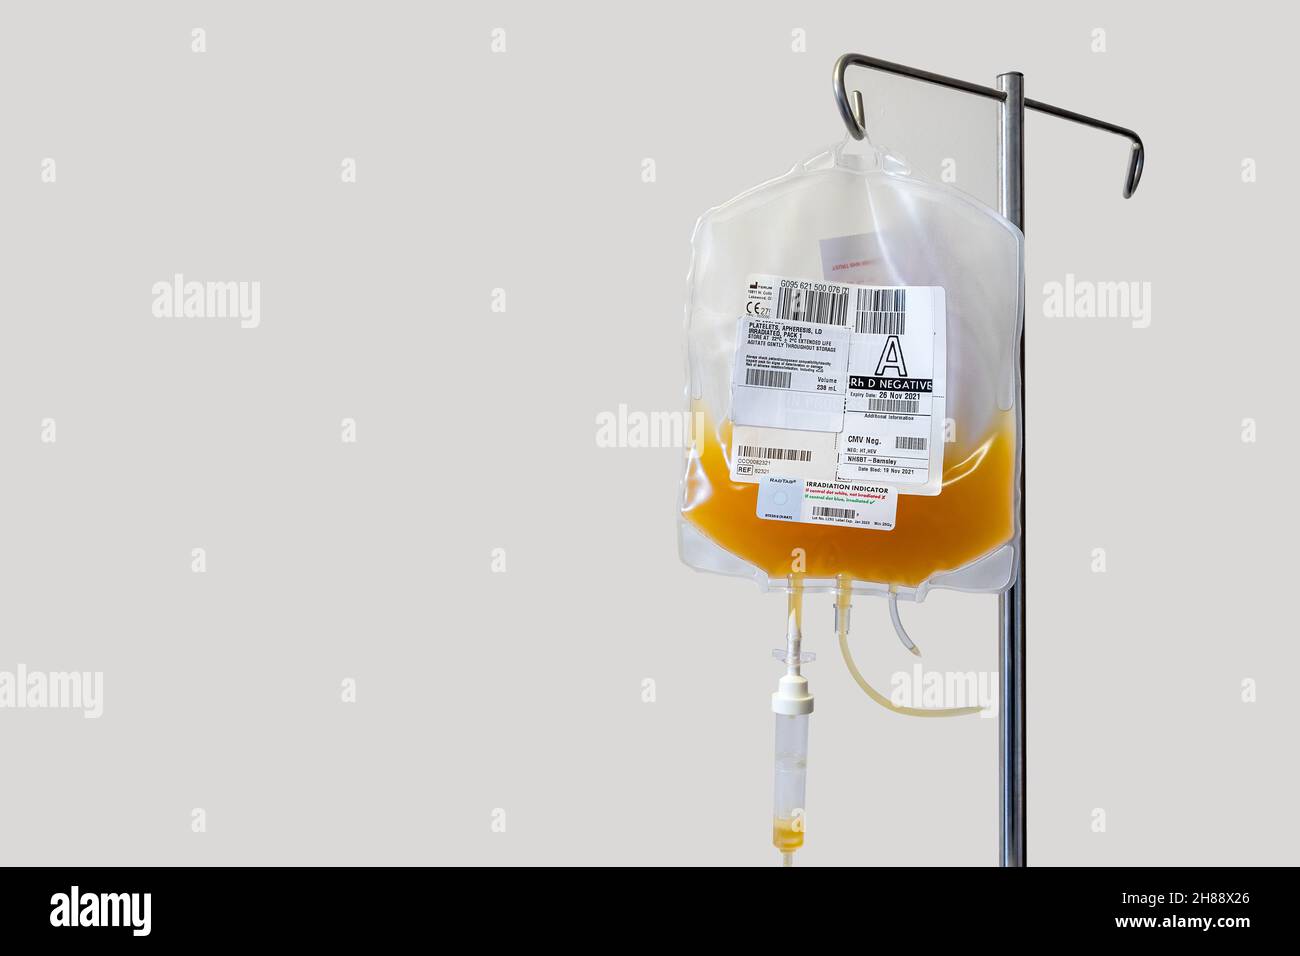 Sacca di piastrine del sangue sospesa come parte di una trasfusione di piastrine per il trattamento chemioterapico. Primo piano con spazio di copia. Foto Stock